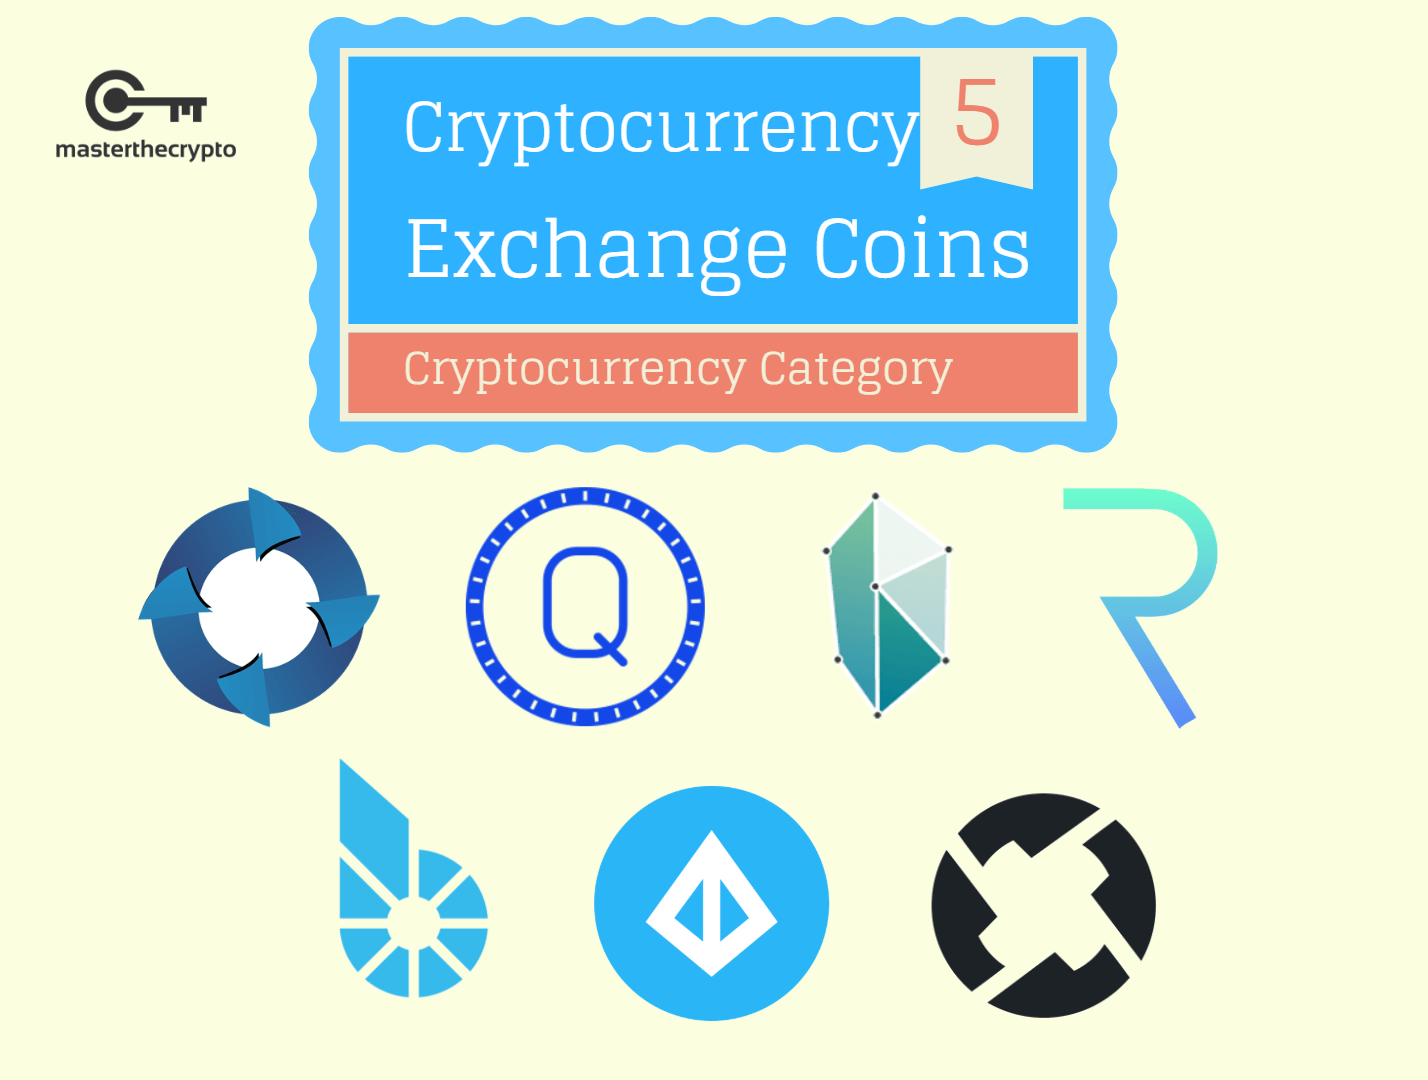 cryptocurrency exchange, cryptocurrency exchange coins, exchange coins, payment networks, payment network